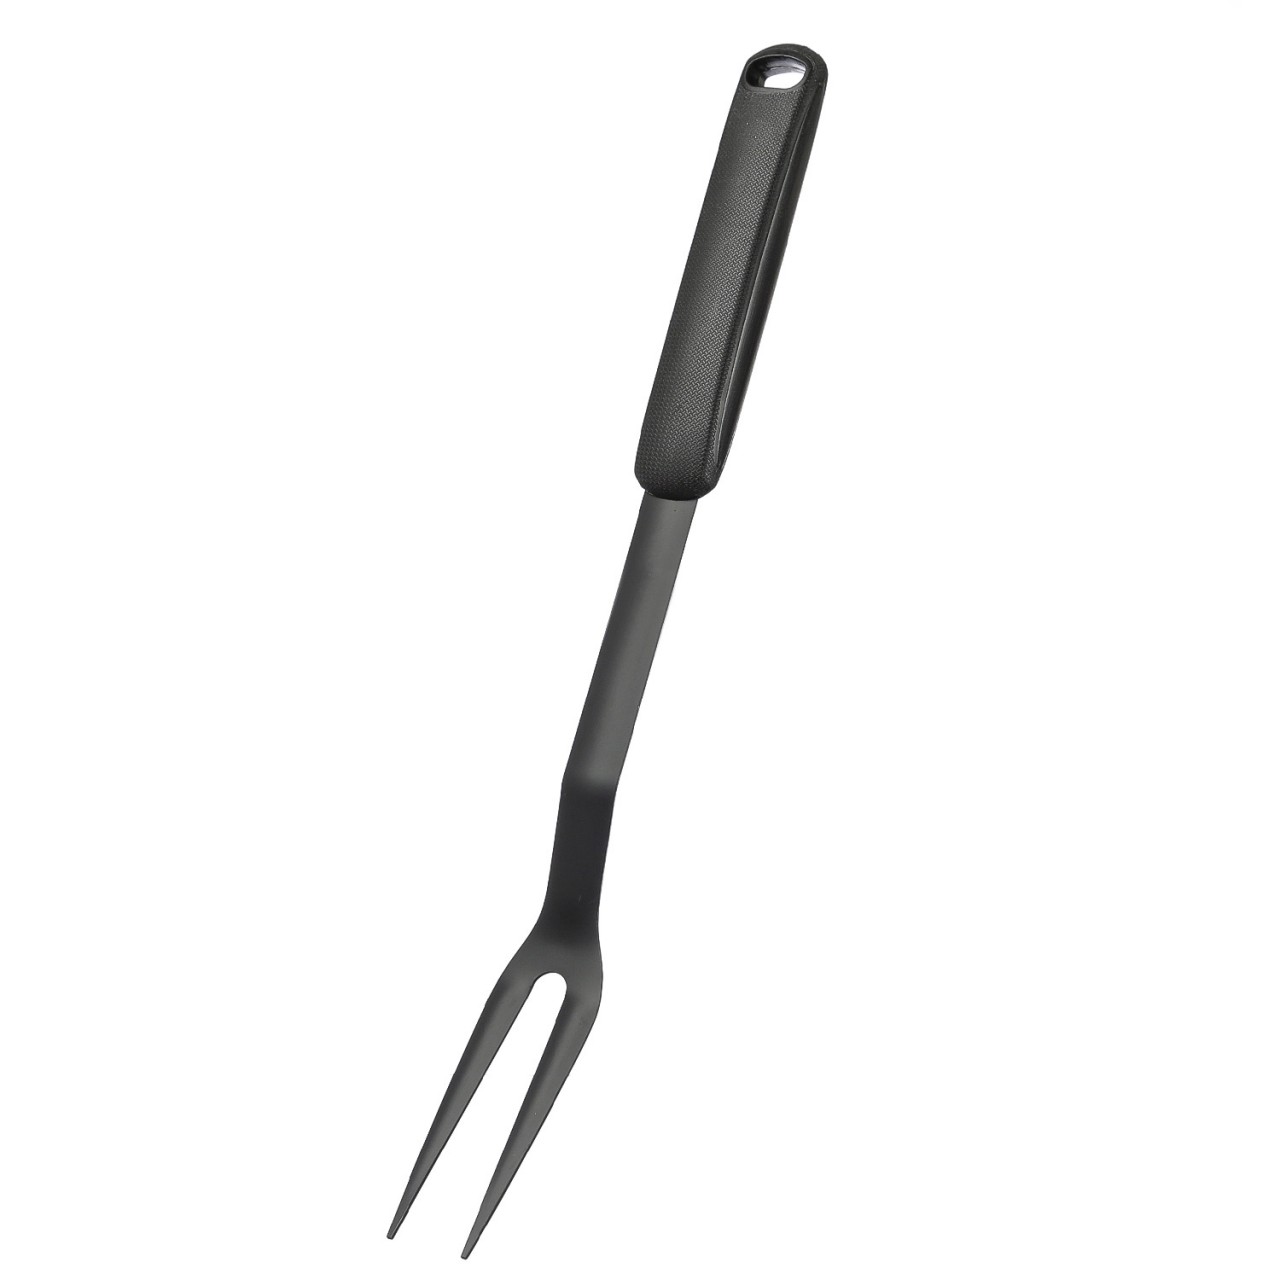 Grillgabel – Werkzeug für BBQ und Plancha – besonders robust – 45,5cm